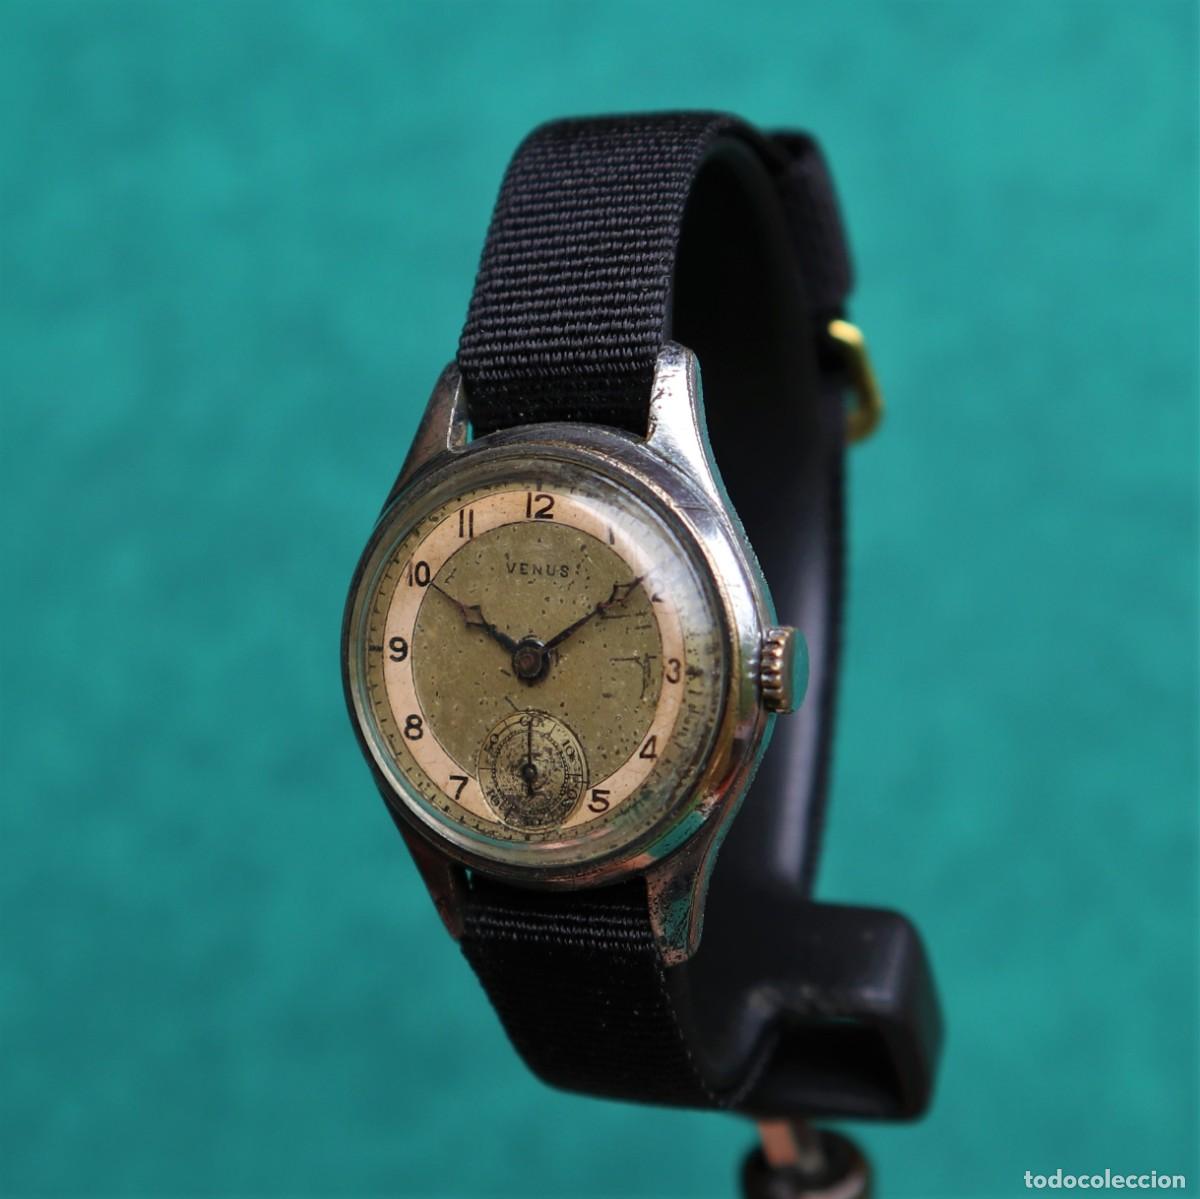 VENUS reloj de cuerda vintage militar suizo montre orologio watch